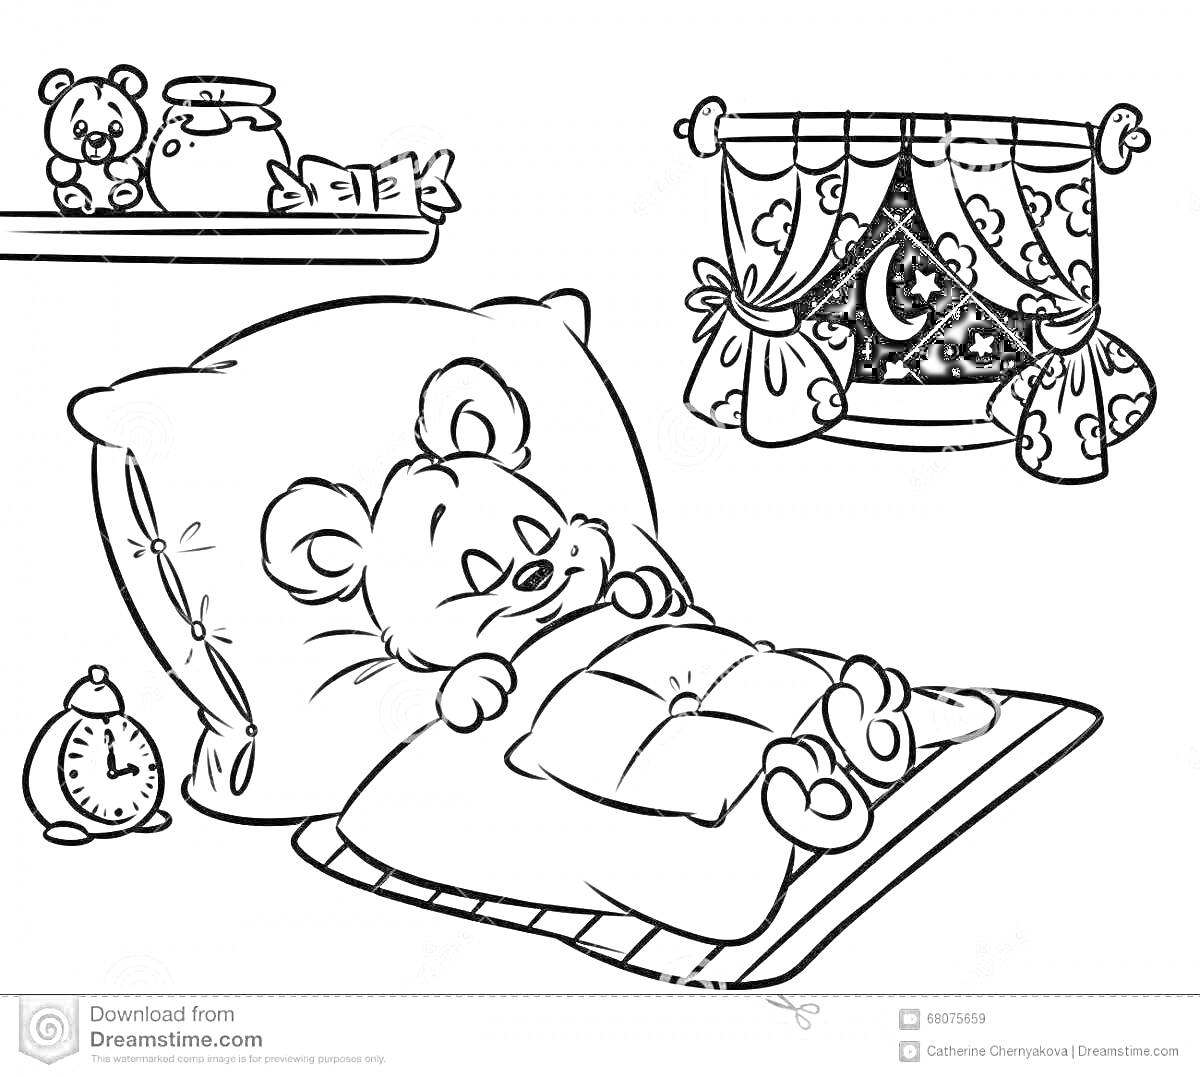 Раскраска Спящий мишка в кровати под одеялом, будильник, картина на стене, полка с книгами и игрушками, окно с ночным небом и занавесками